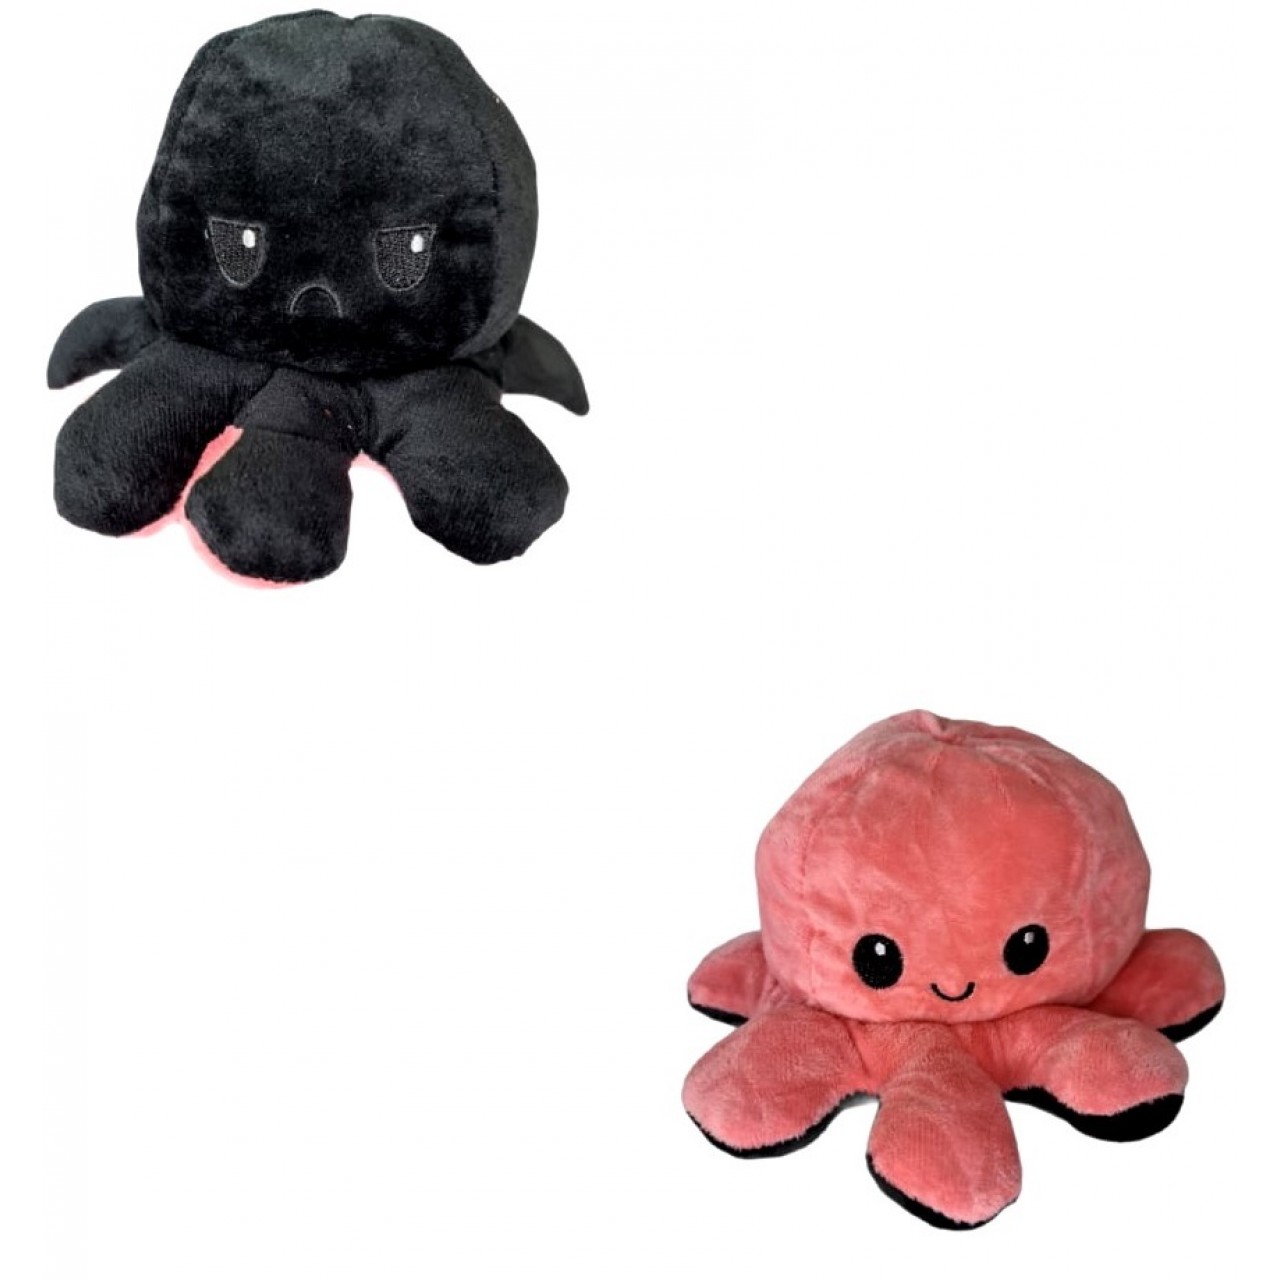 Χταπόδι διπλής όψης λούτρινο emotional reversible octopus plush 20 εκ - 5322 - Μαύρο / Ροζ σκούρο